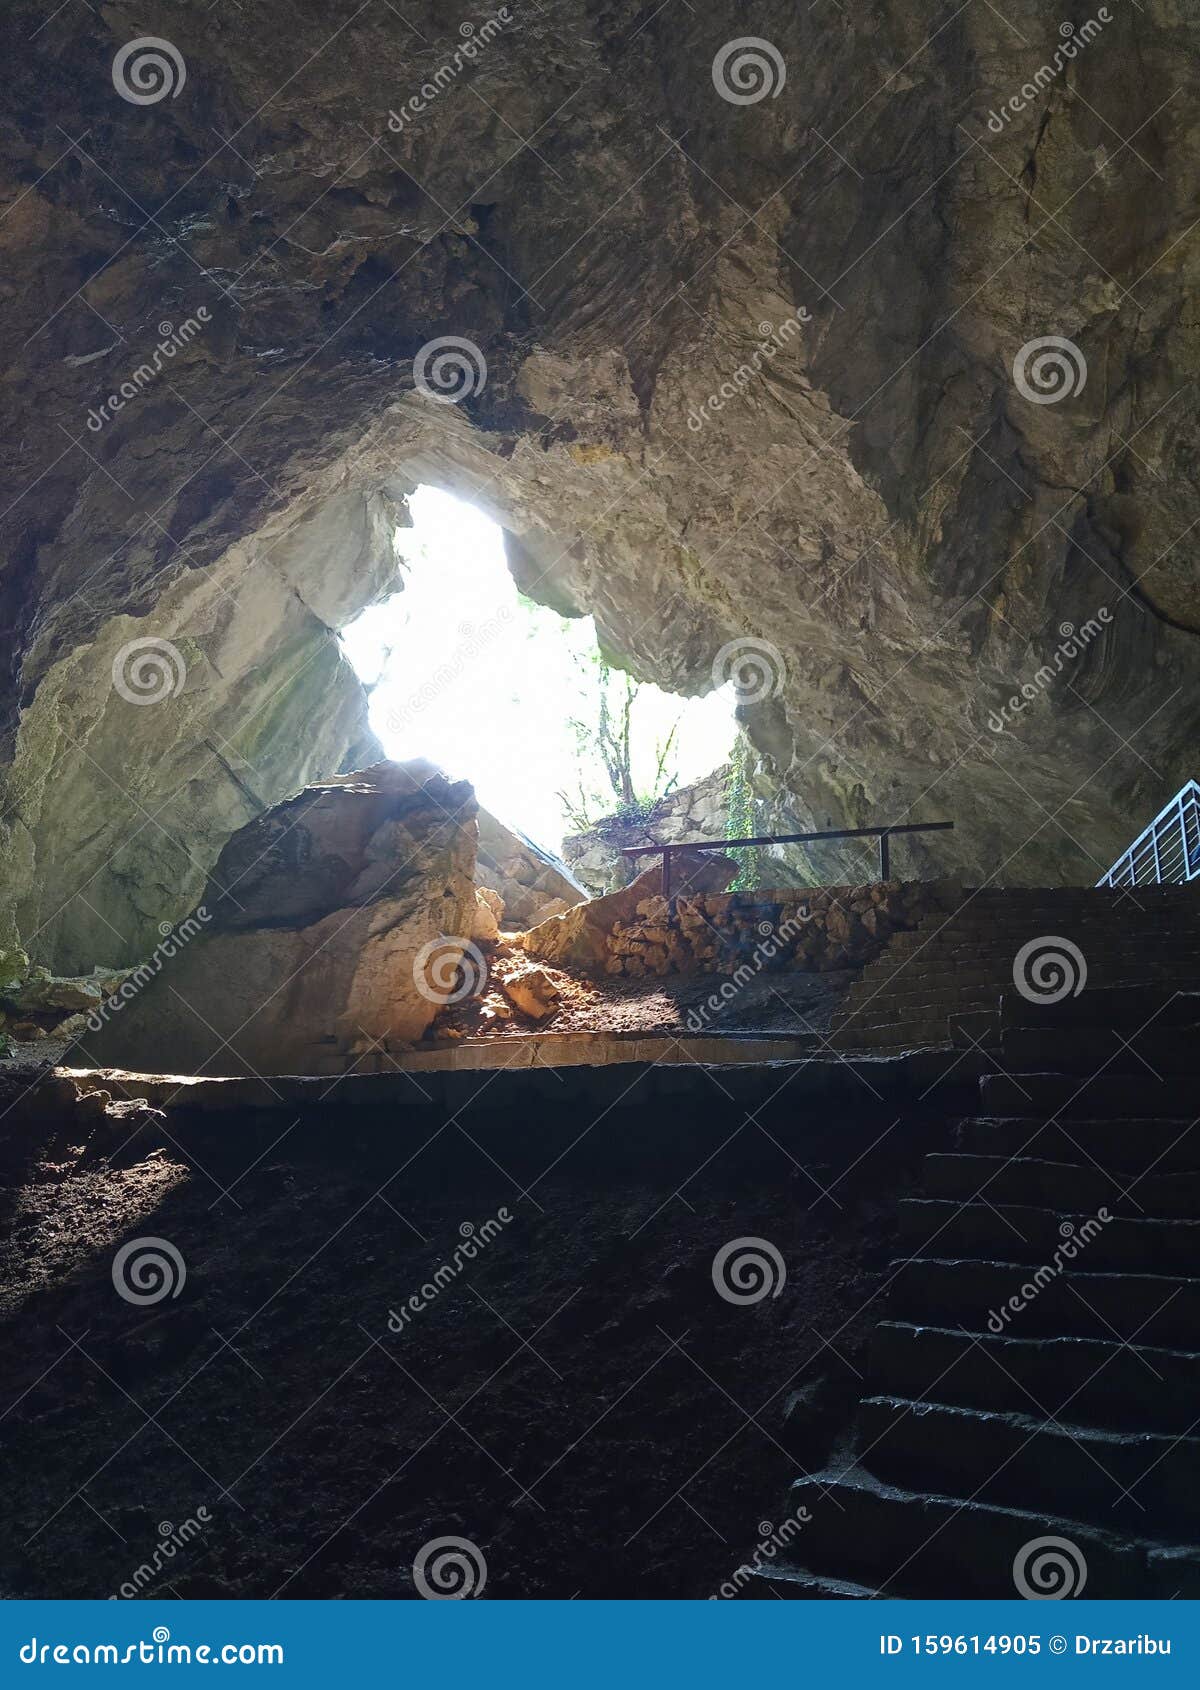 beautiful resava cave